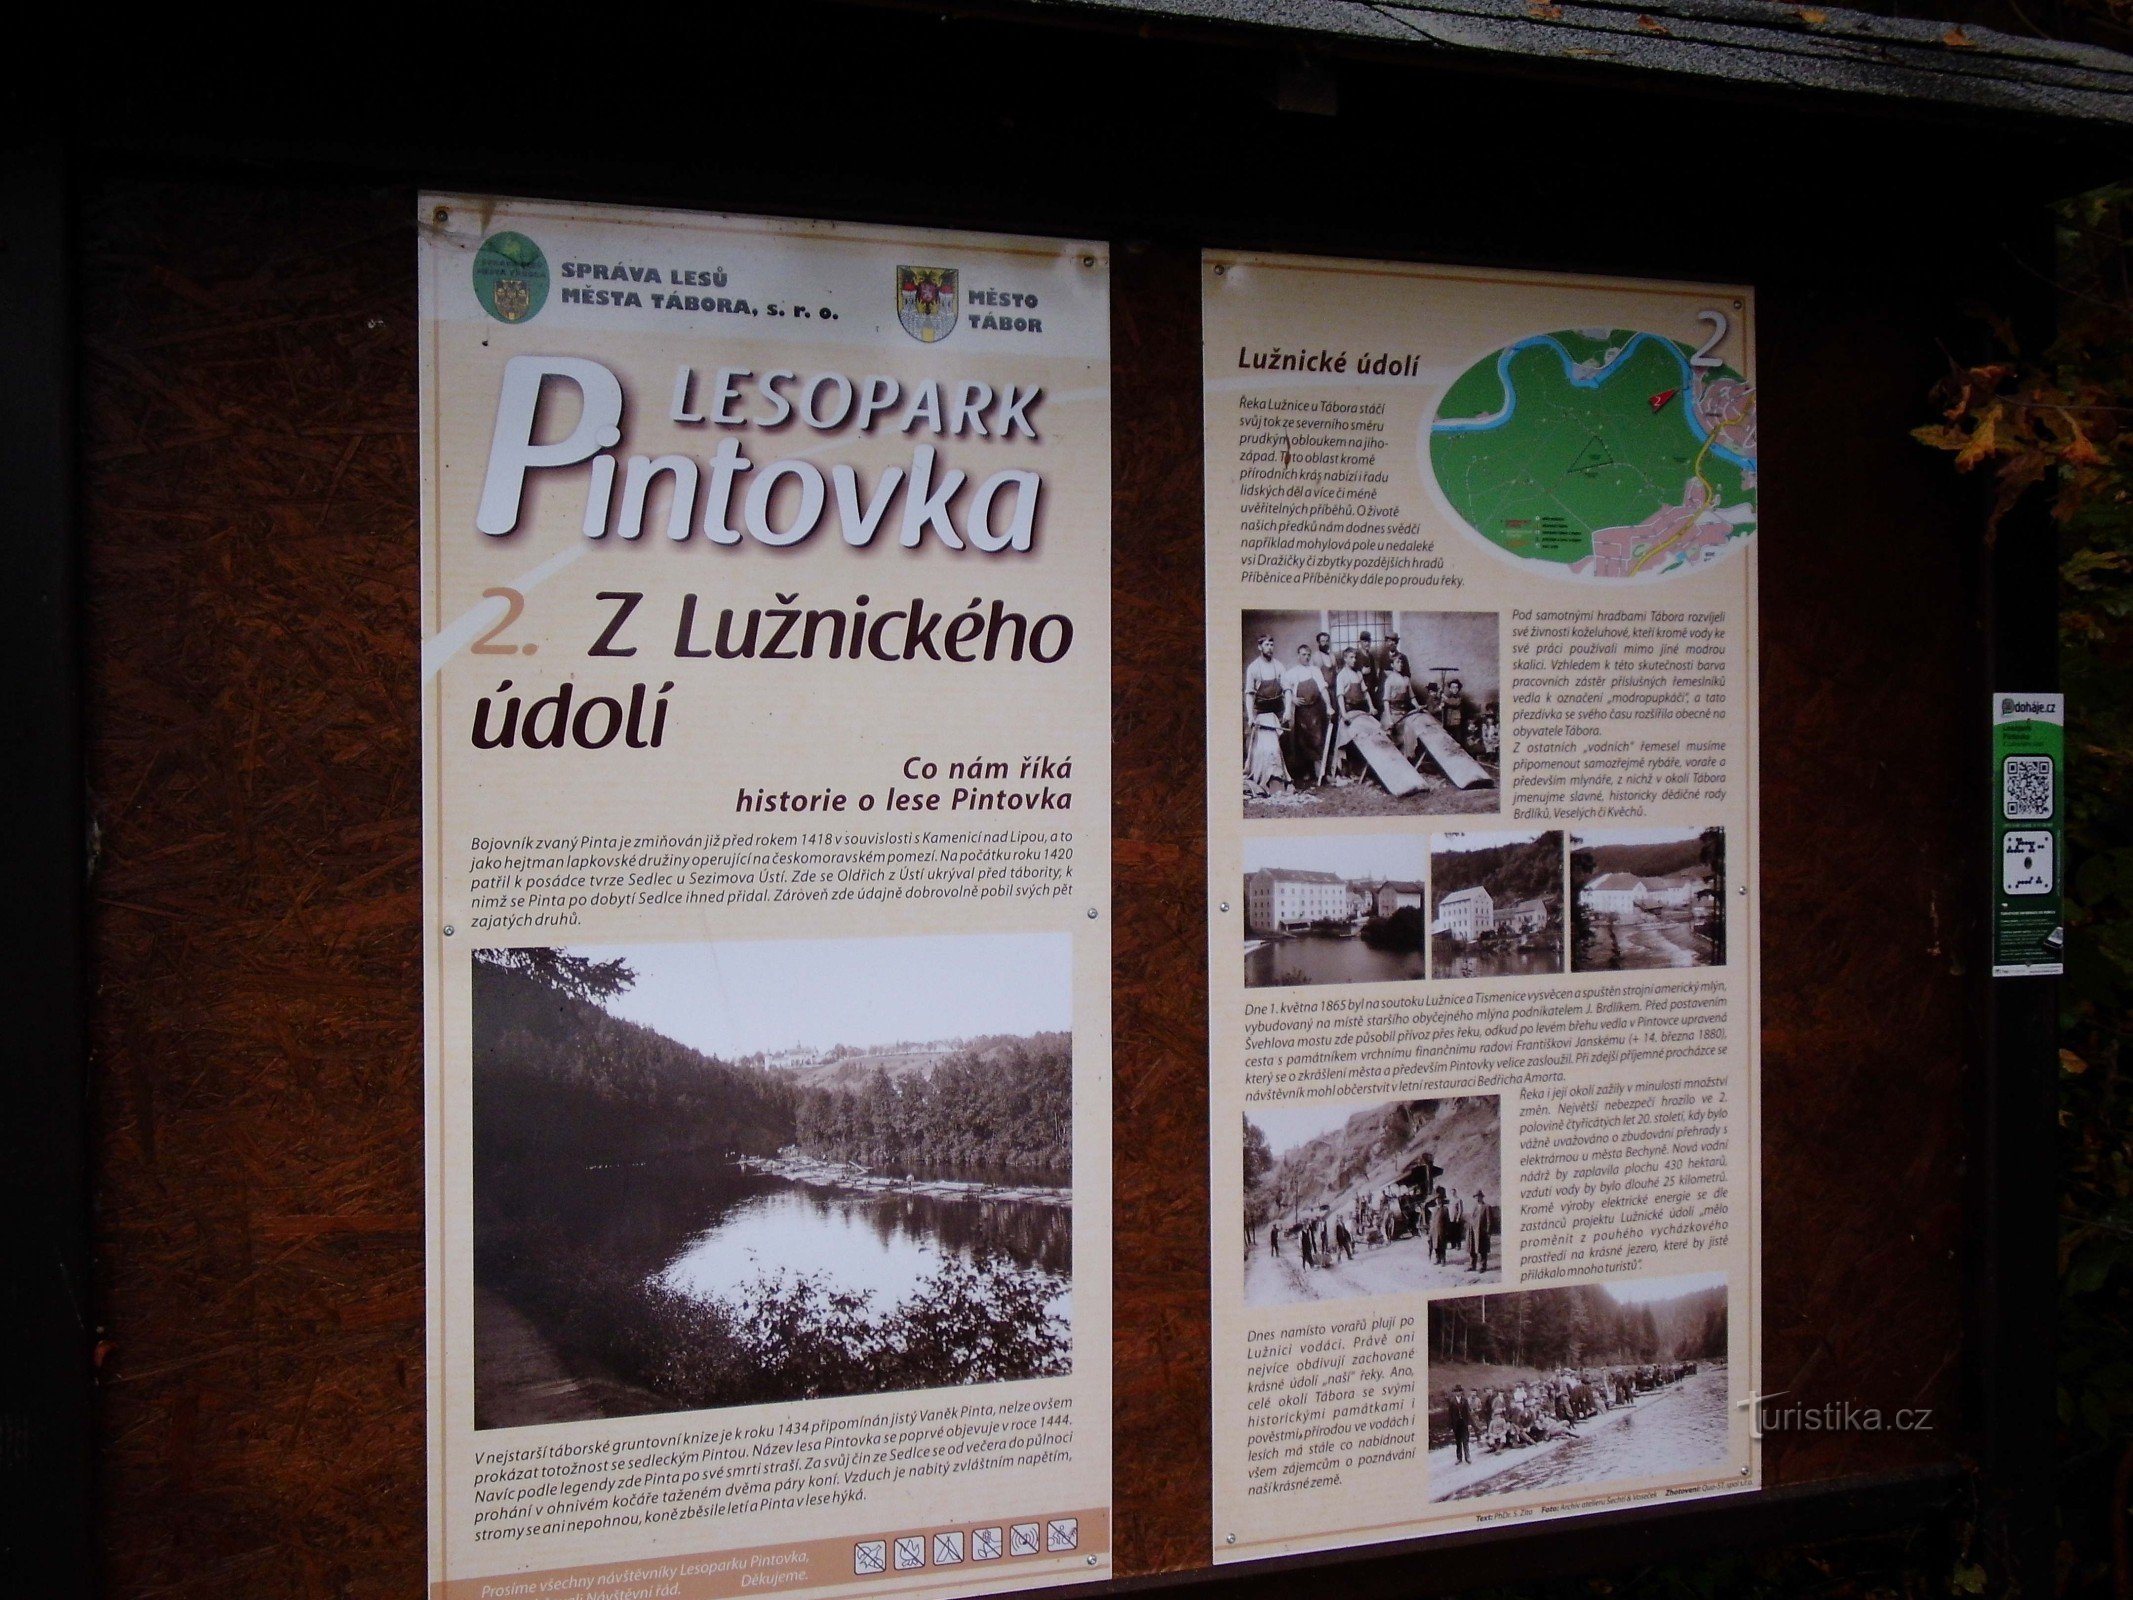 Từ Tábor đến Bechyně dọc theo bờ Lužnice hoặc xa hơn dọc theo con đường đỏ